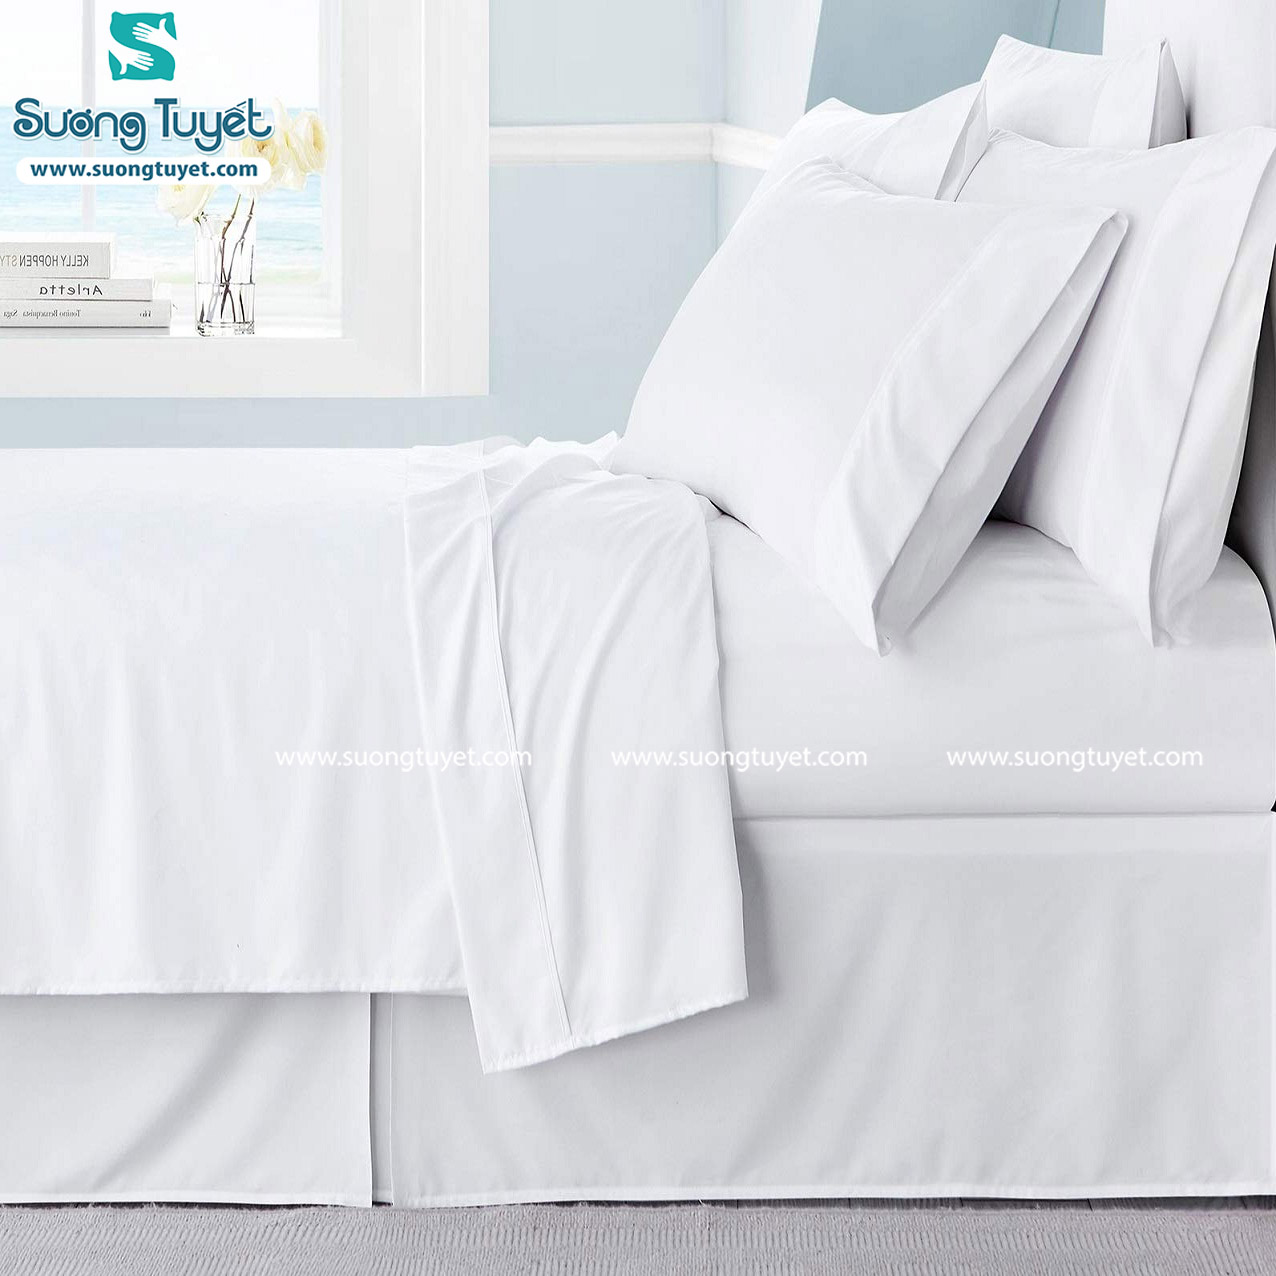 Vải cotton khách sạn trắng trơn bao gồm T250, T300... đa dạng từ phổ thông đến cao cấp